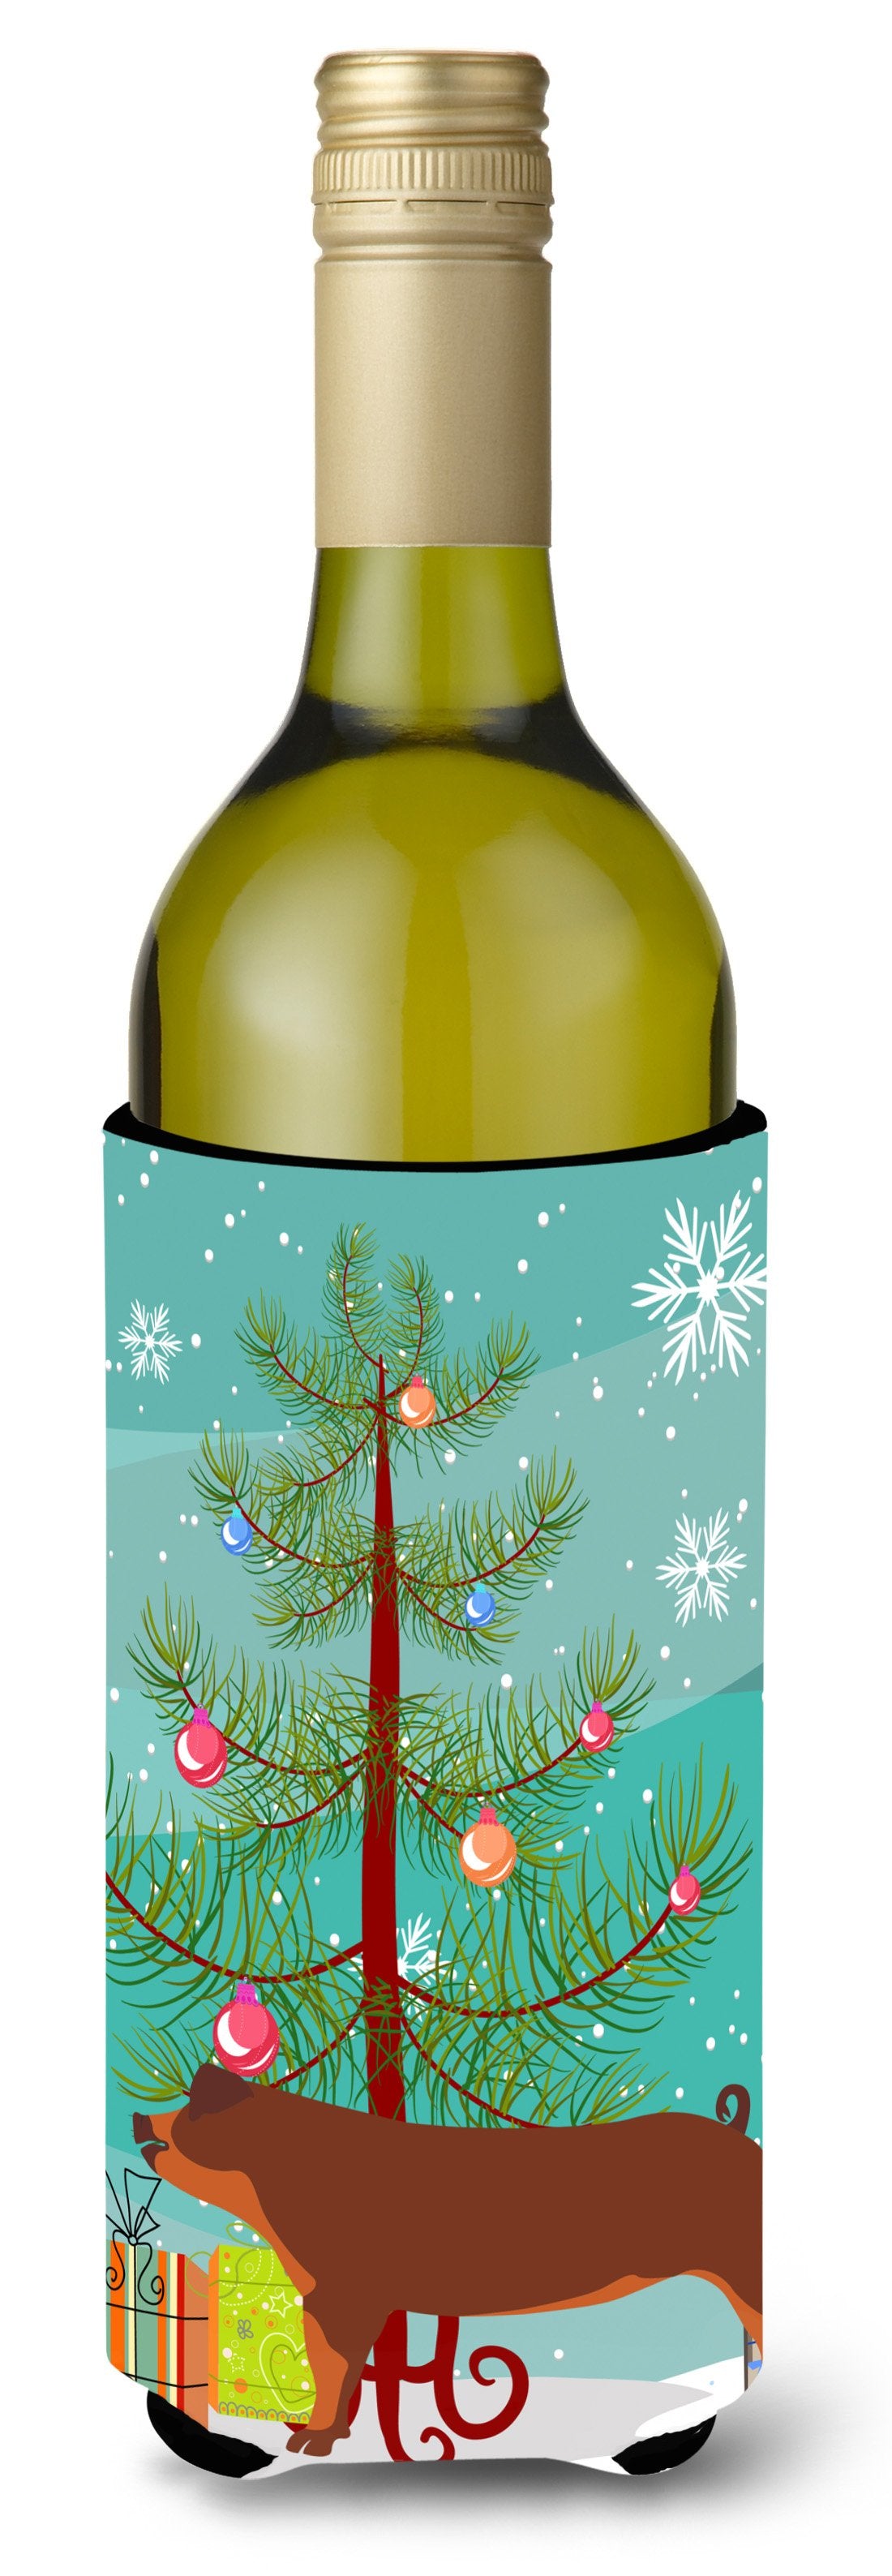 Duroc Pig Christmas Wine Bottle Beverge Insulator Hugger BB9309LITERK by Caroline's Treasures